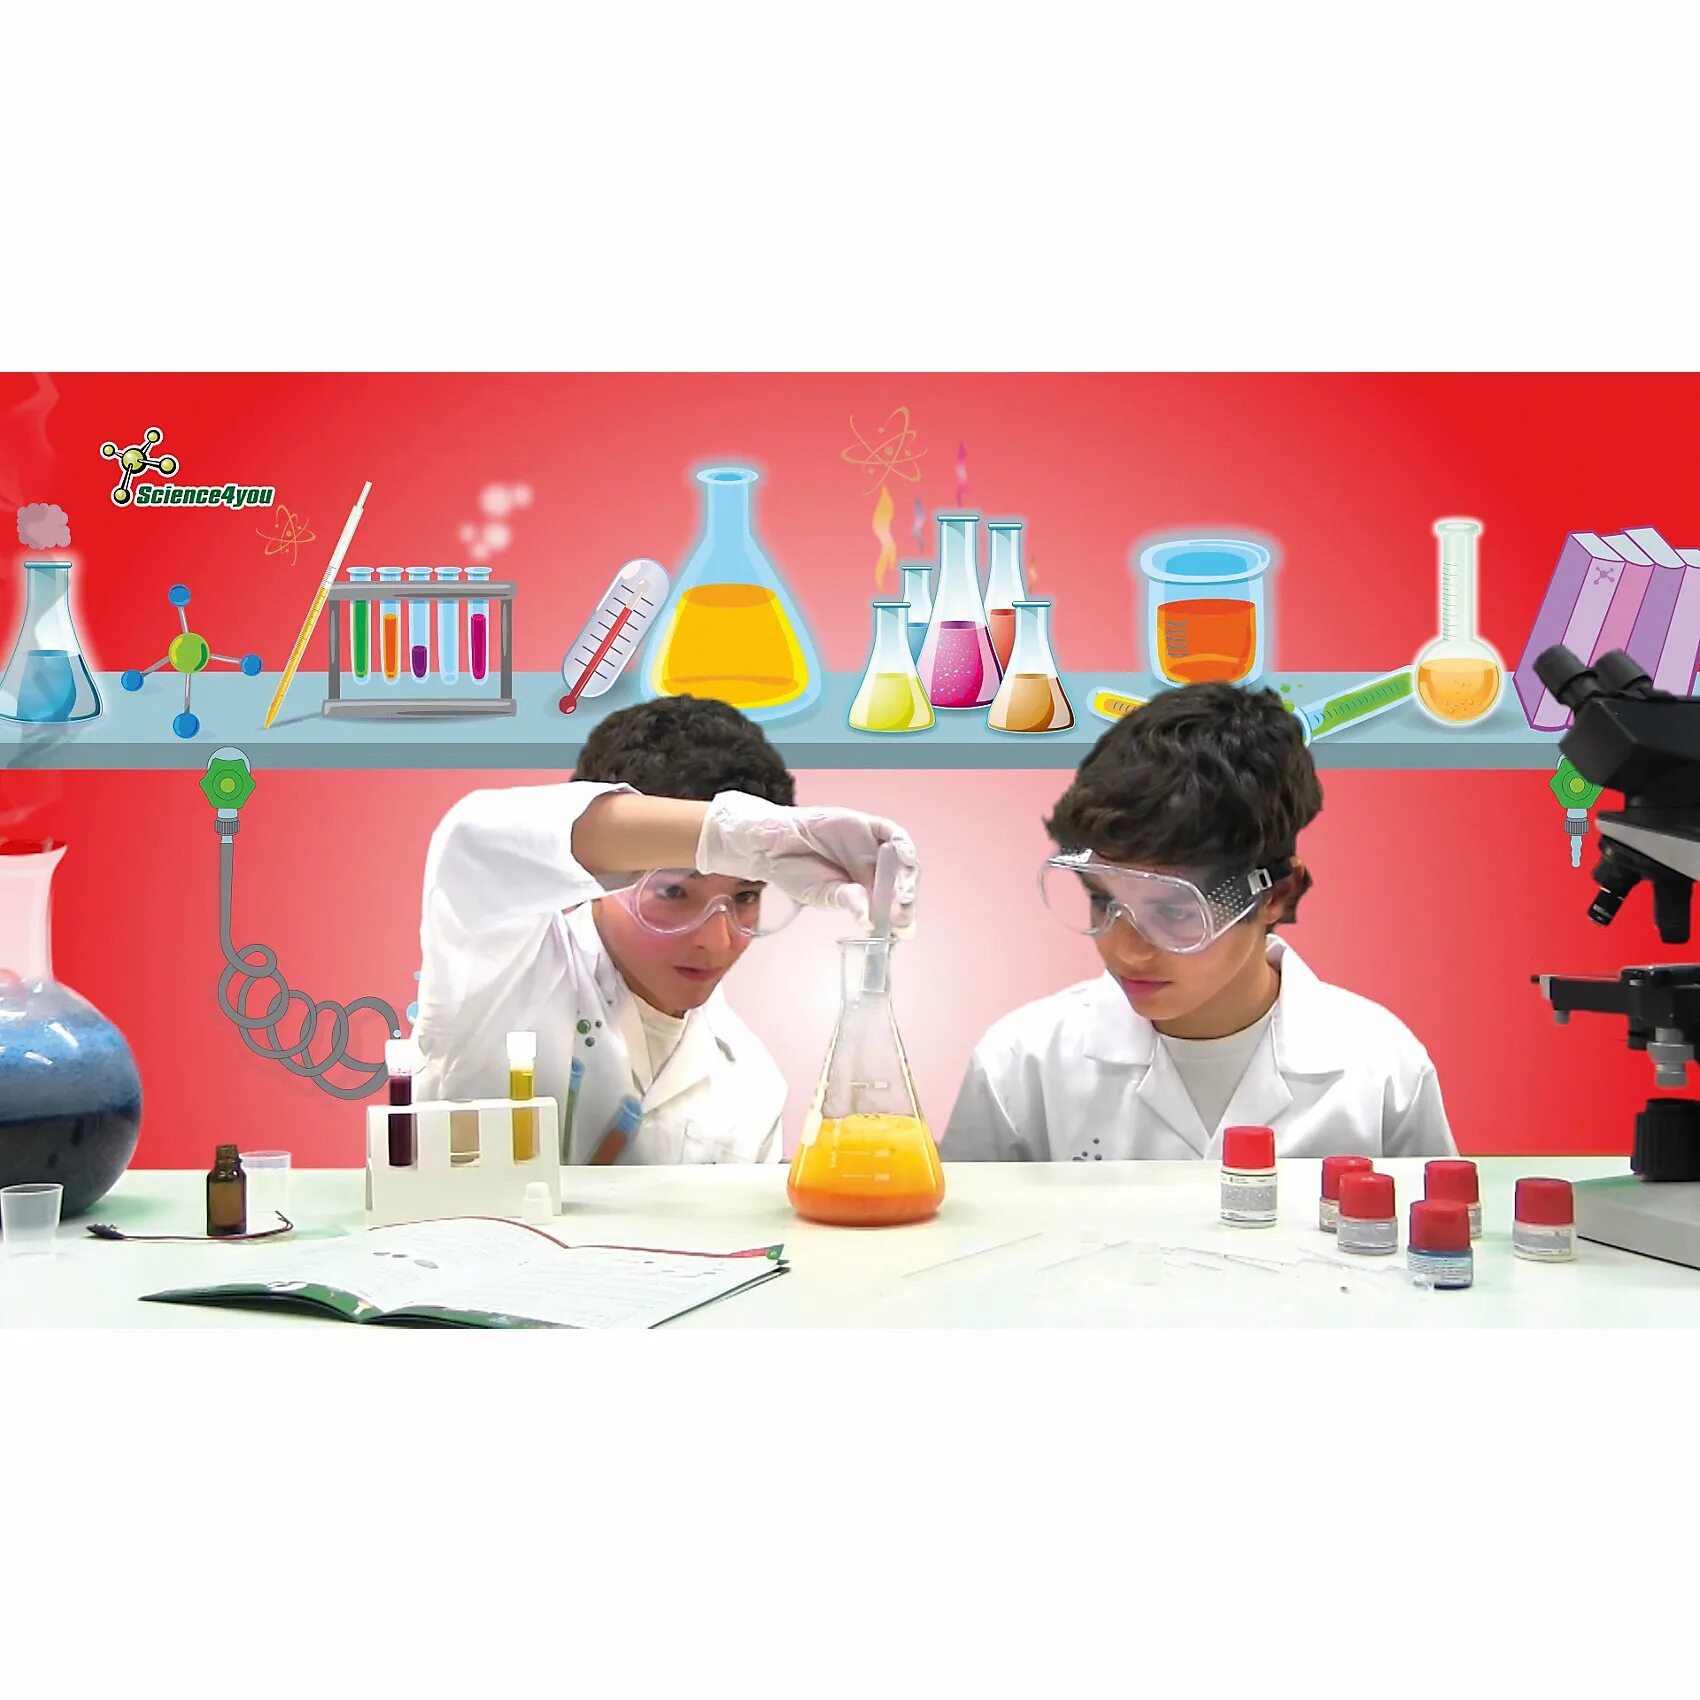 Моя лаборатория химические опыты science4you. Набор science4you моя лаборатория химические опыты. Научные эксперименты для детей в детском саду. Хим лаборатория для детей.